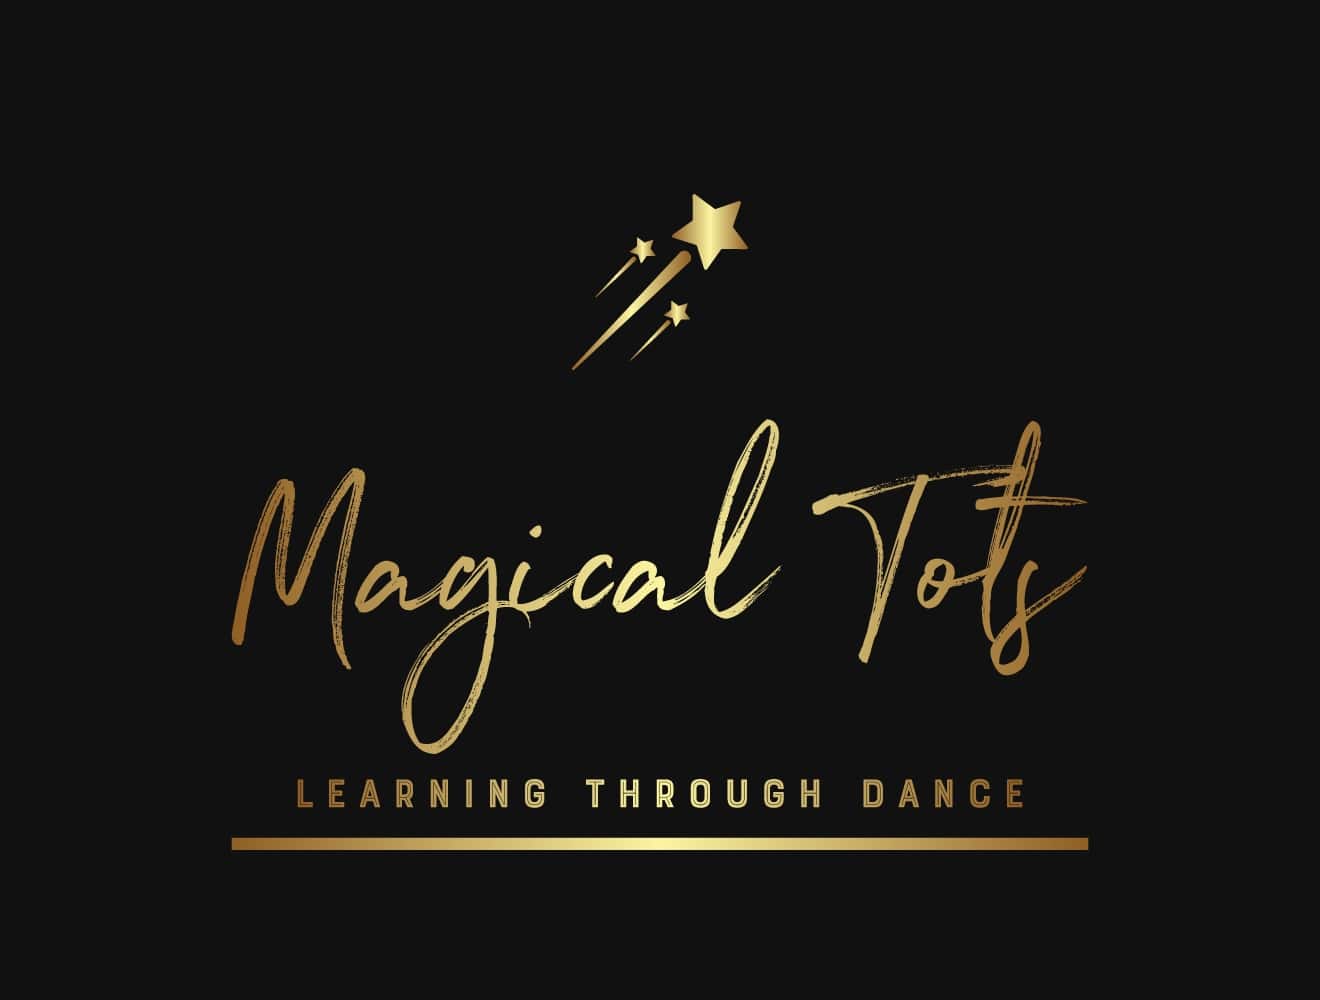 Magical Tots's logo